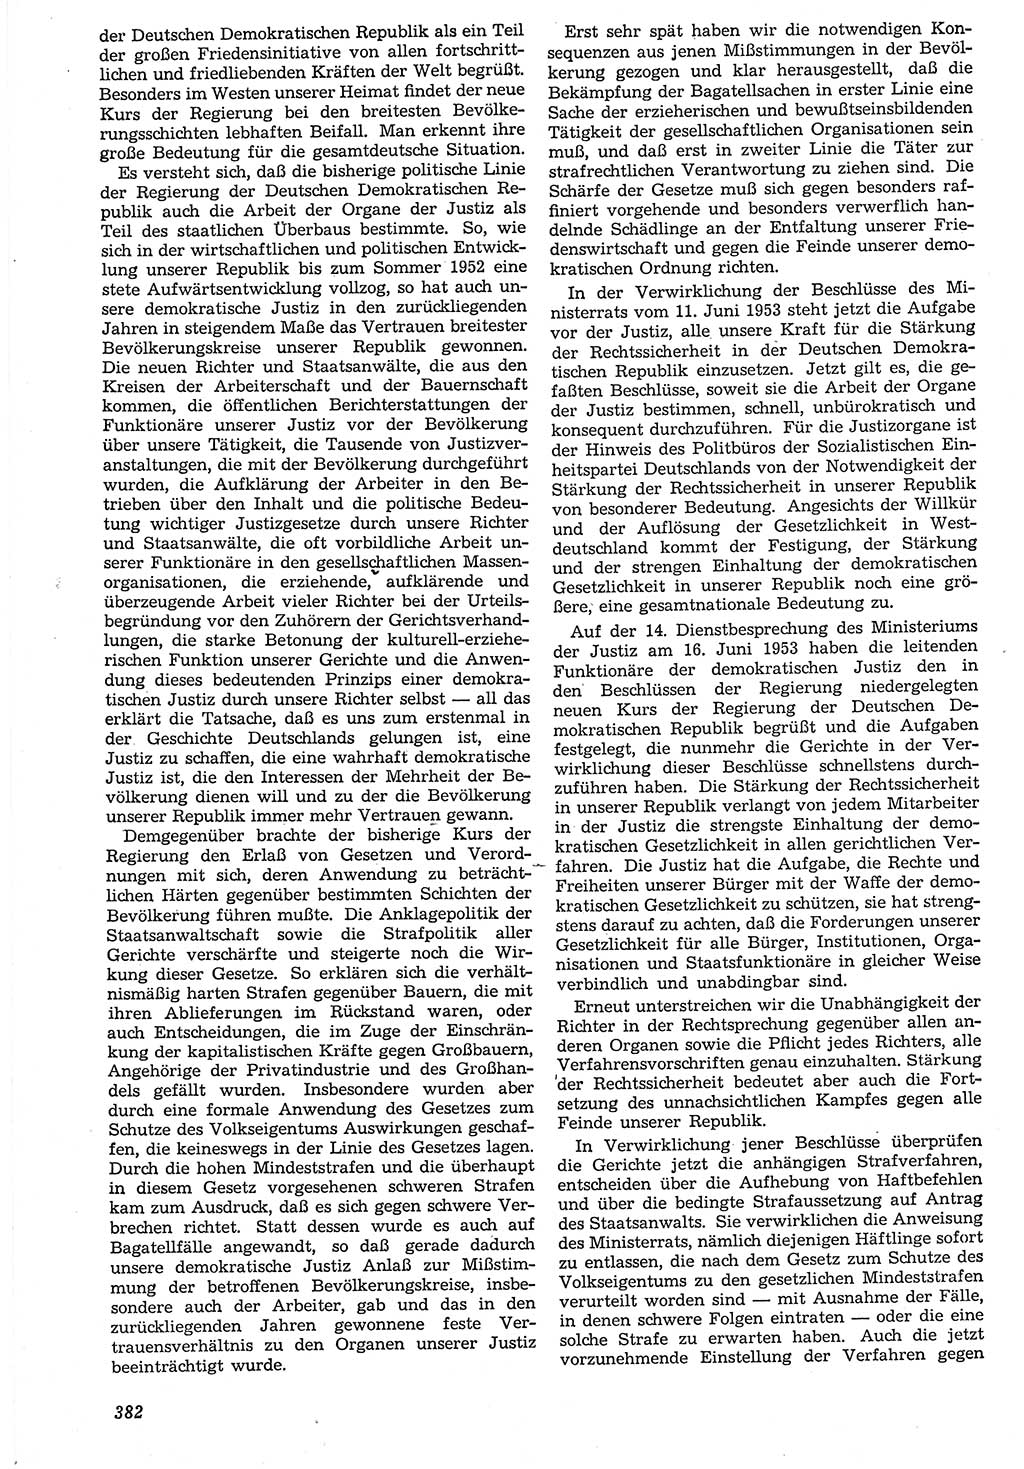 Neue Justiz (NJ), Zeitschrift für Recht und Rechtswissenschaft [Deutsche Demokratische Republik (DDR)], 7. Jahrgang 1953, Seite 382 (NJ DDR 1953, S. 382)